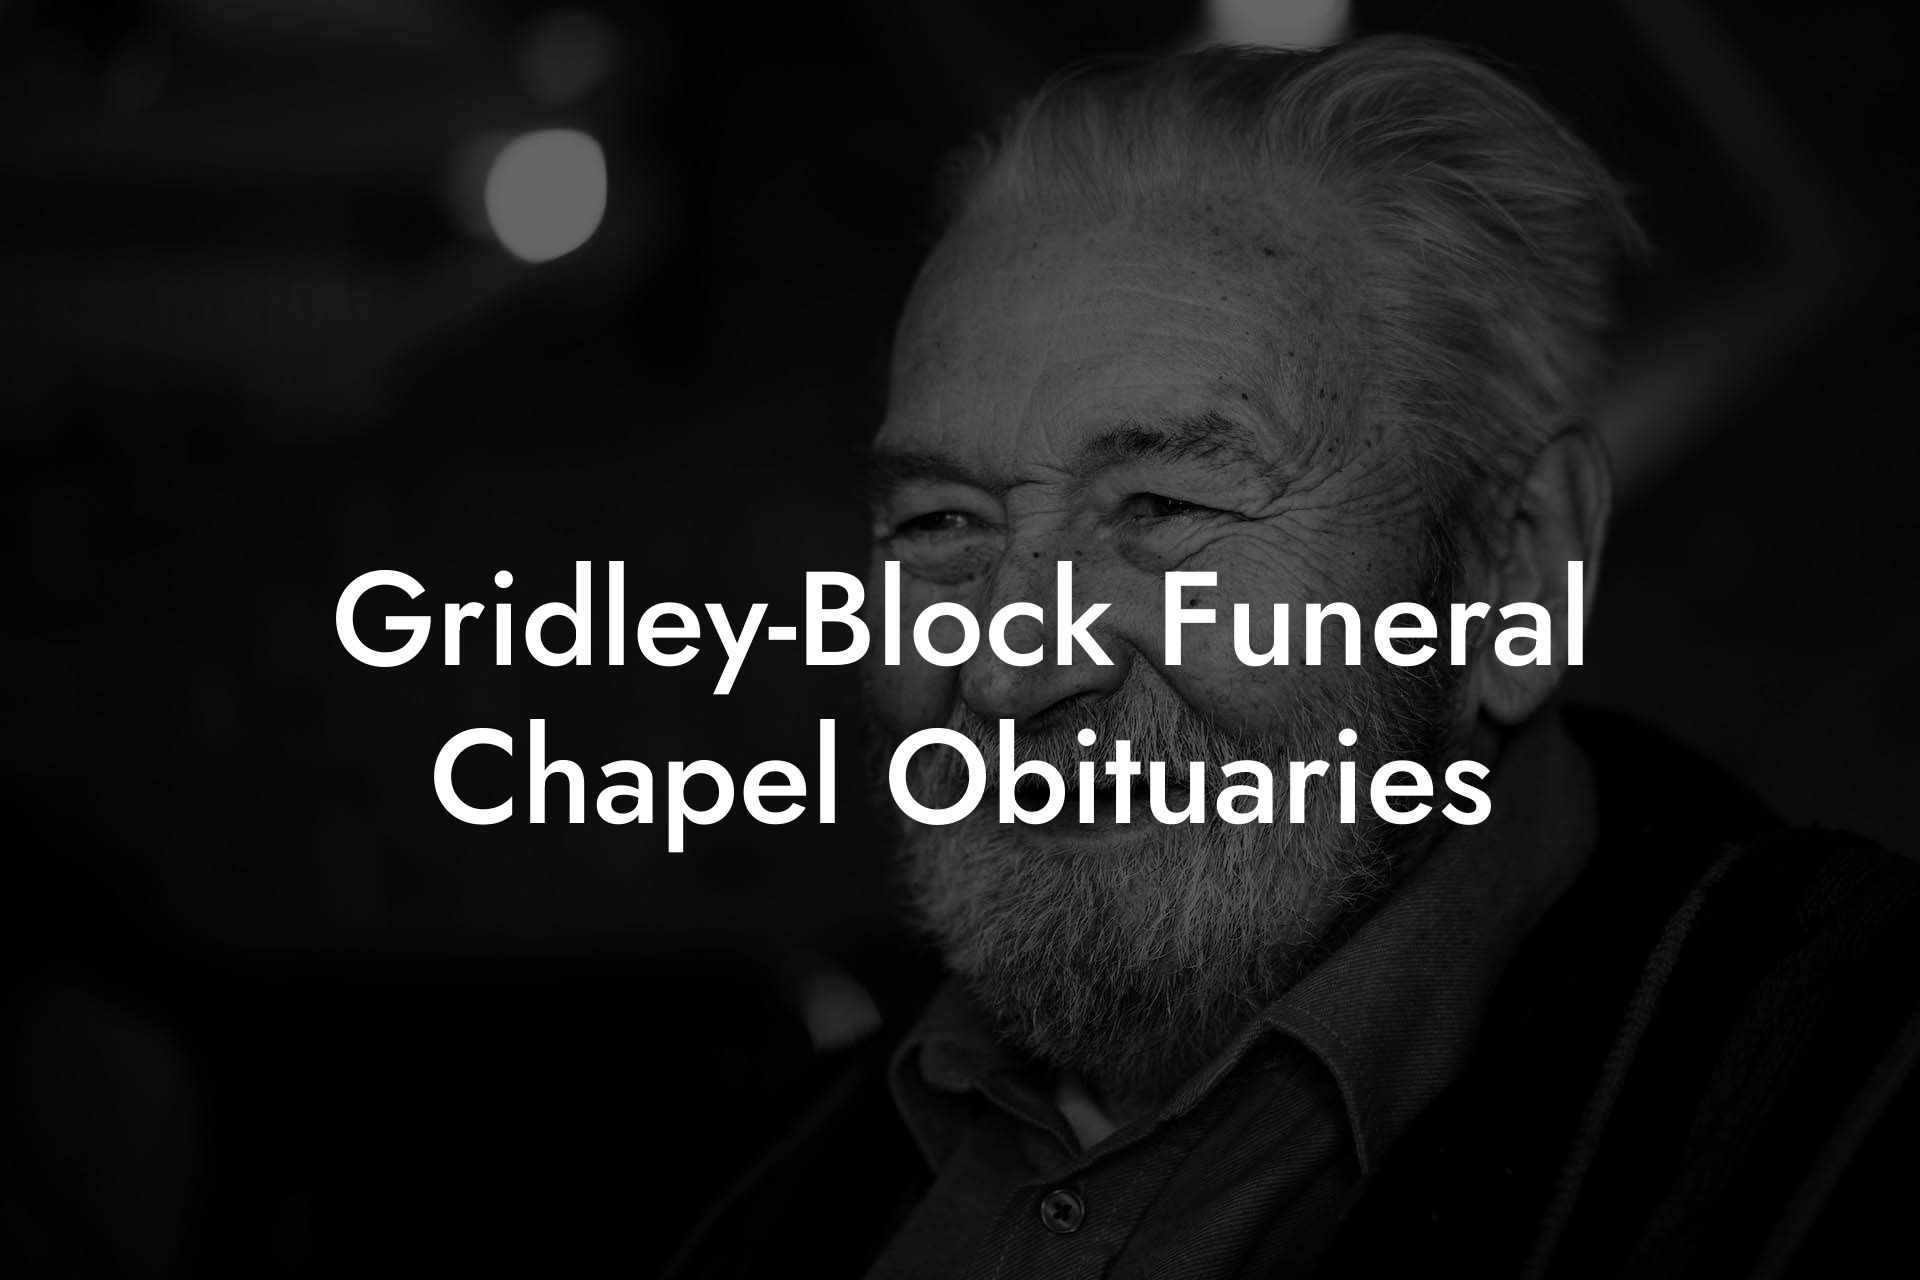 Gridley-Block Funeral Chapel Obituaries